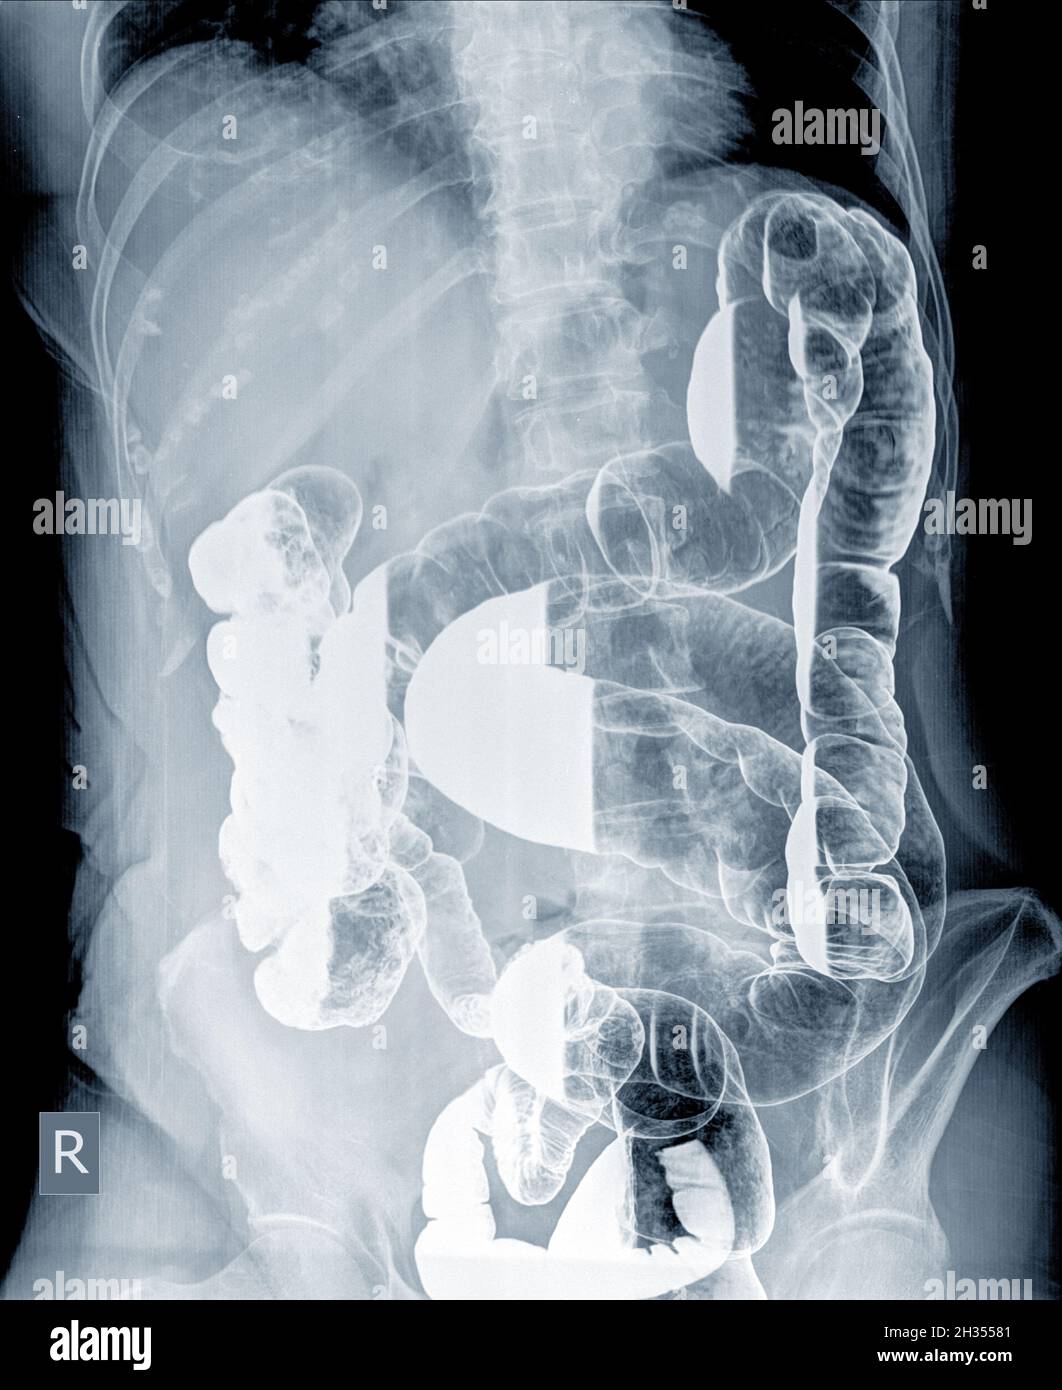 Esame radiologico per cercare le anomalie del colon da enema la polvere di bario e l'aria nell'ano. Quindi è stata eseguita la radiografia. Concetto di immagine medica. Foto Stock